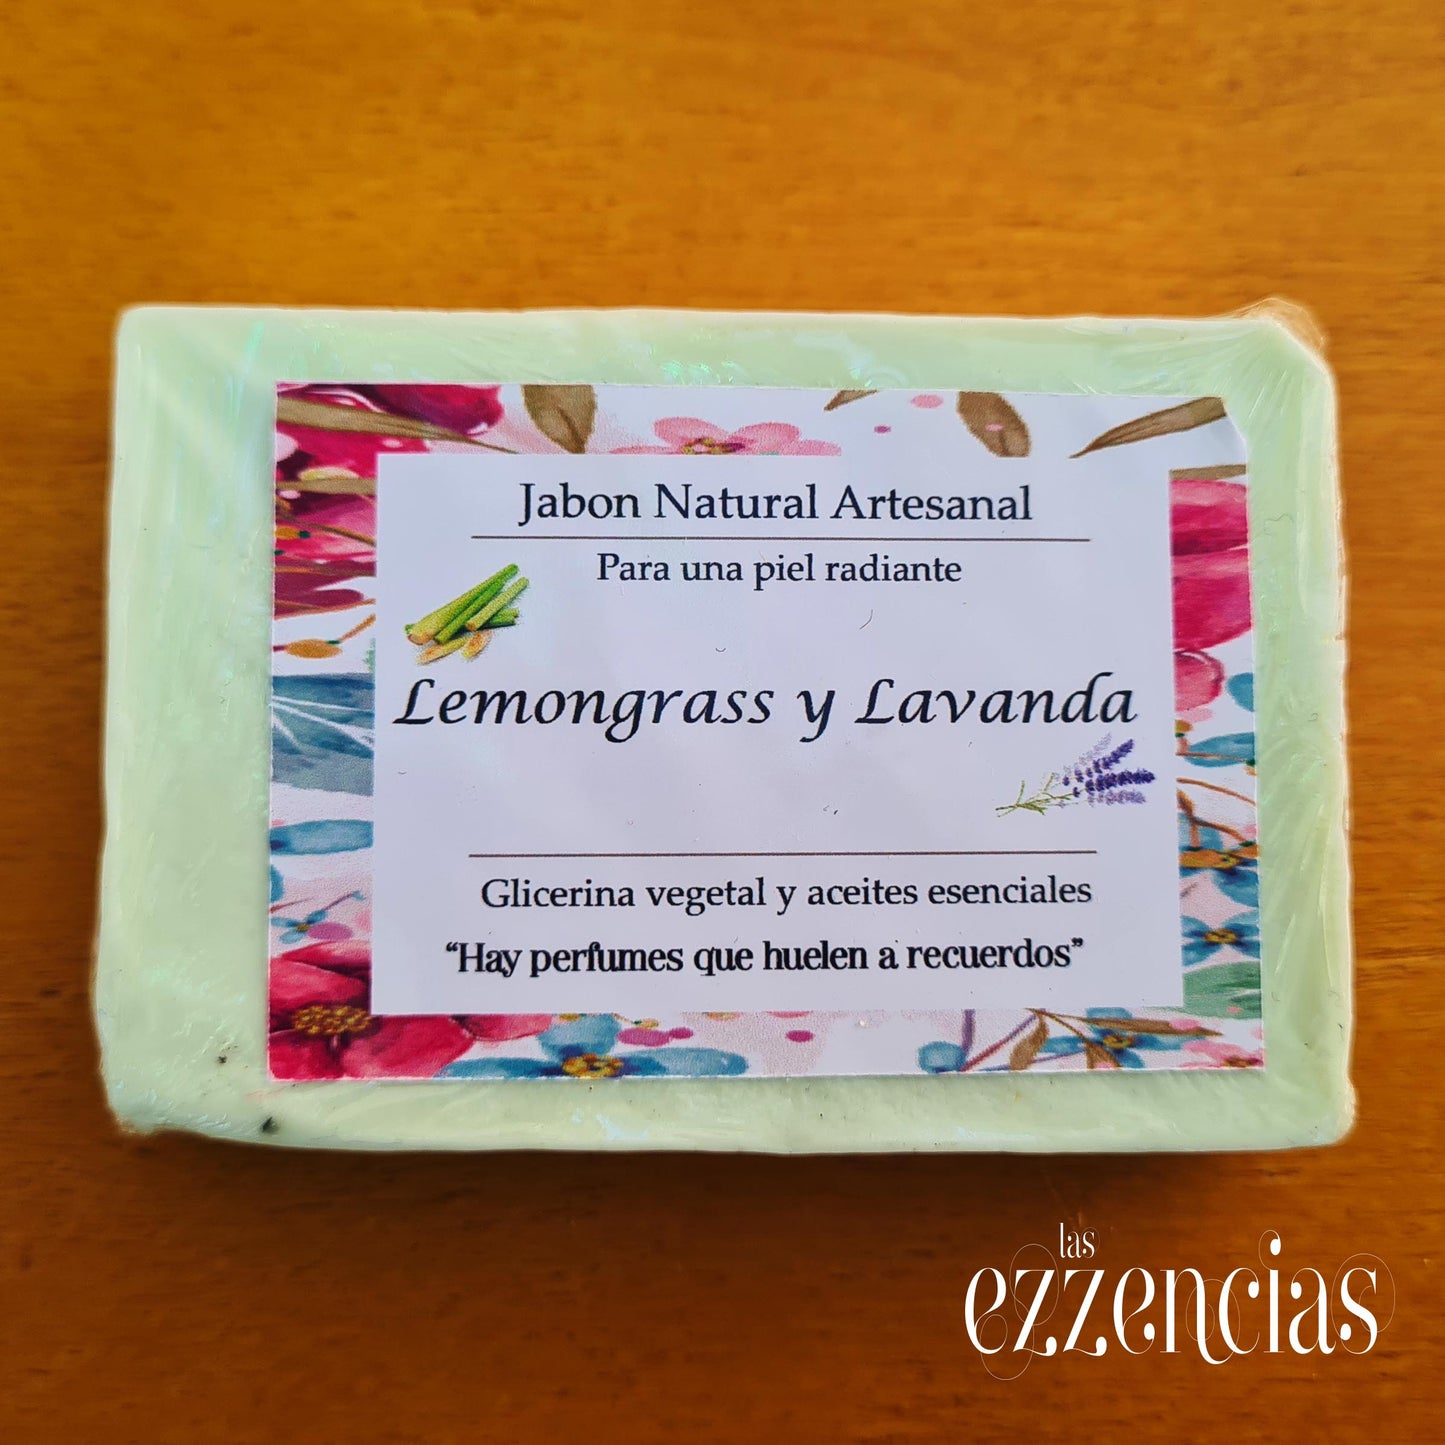 Jabón natural artesanal Lemongrass y Lavanda